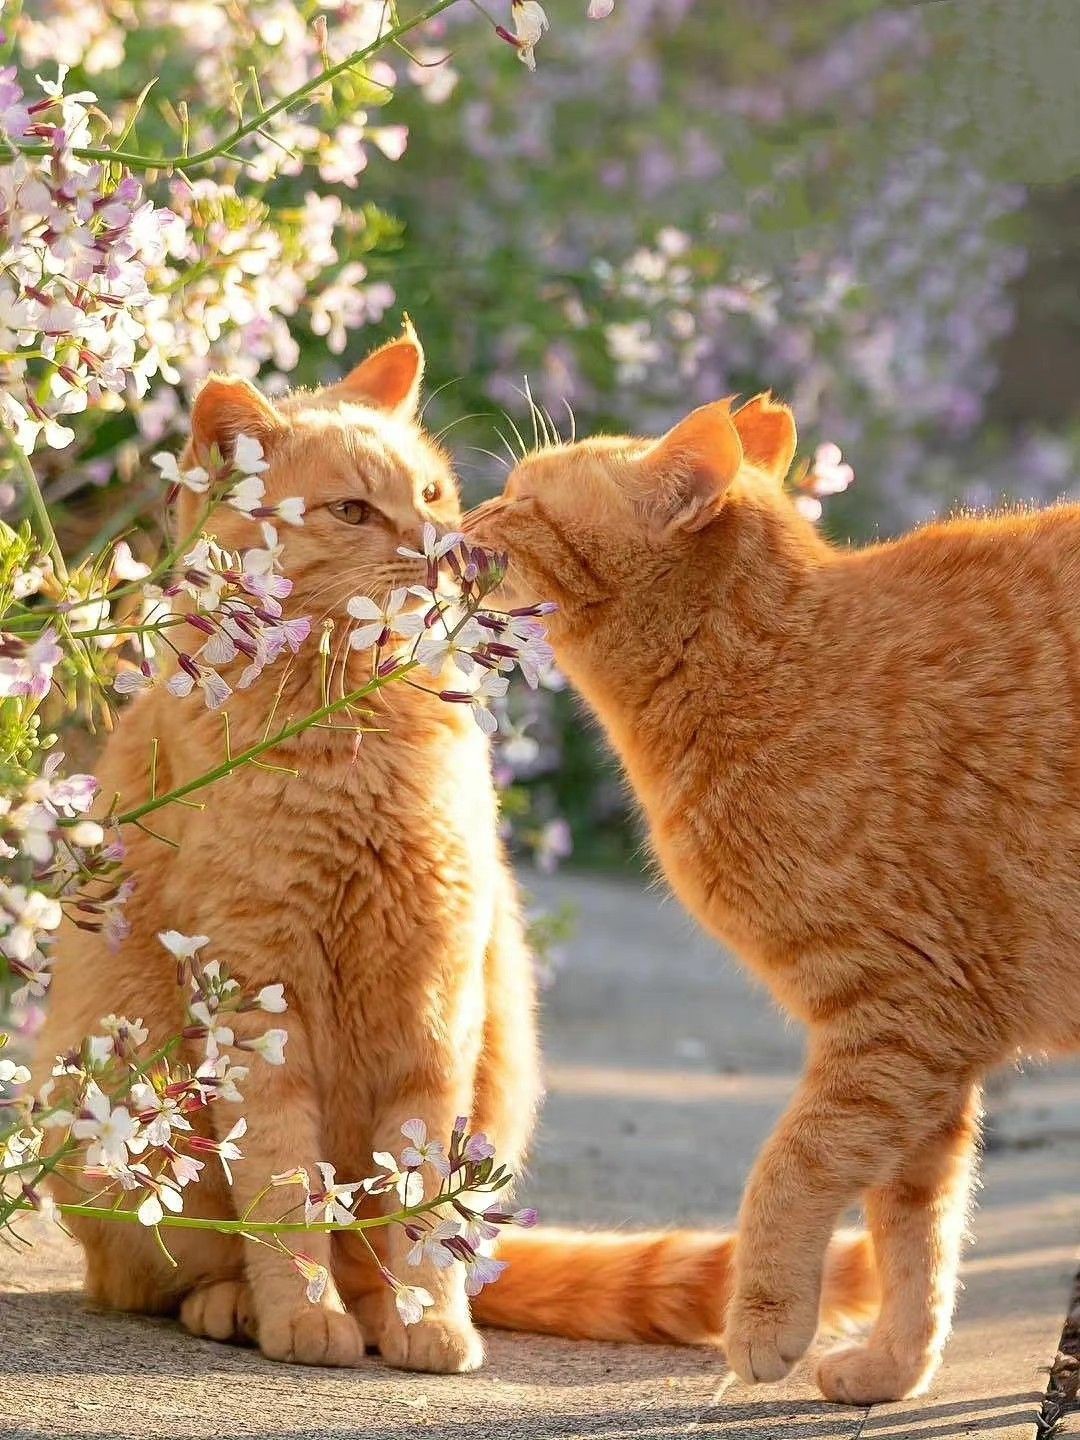 Hình ảnh 2 chú mèo hôn nhau cực đẹp